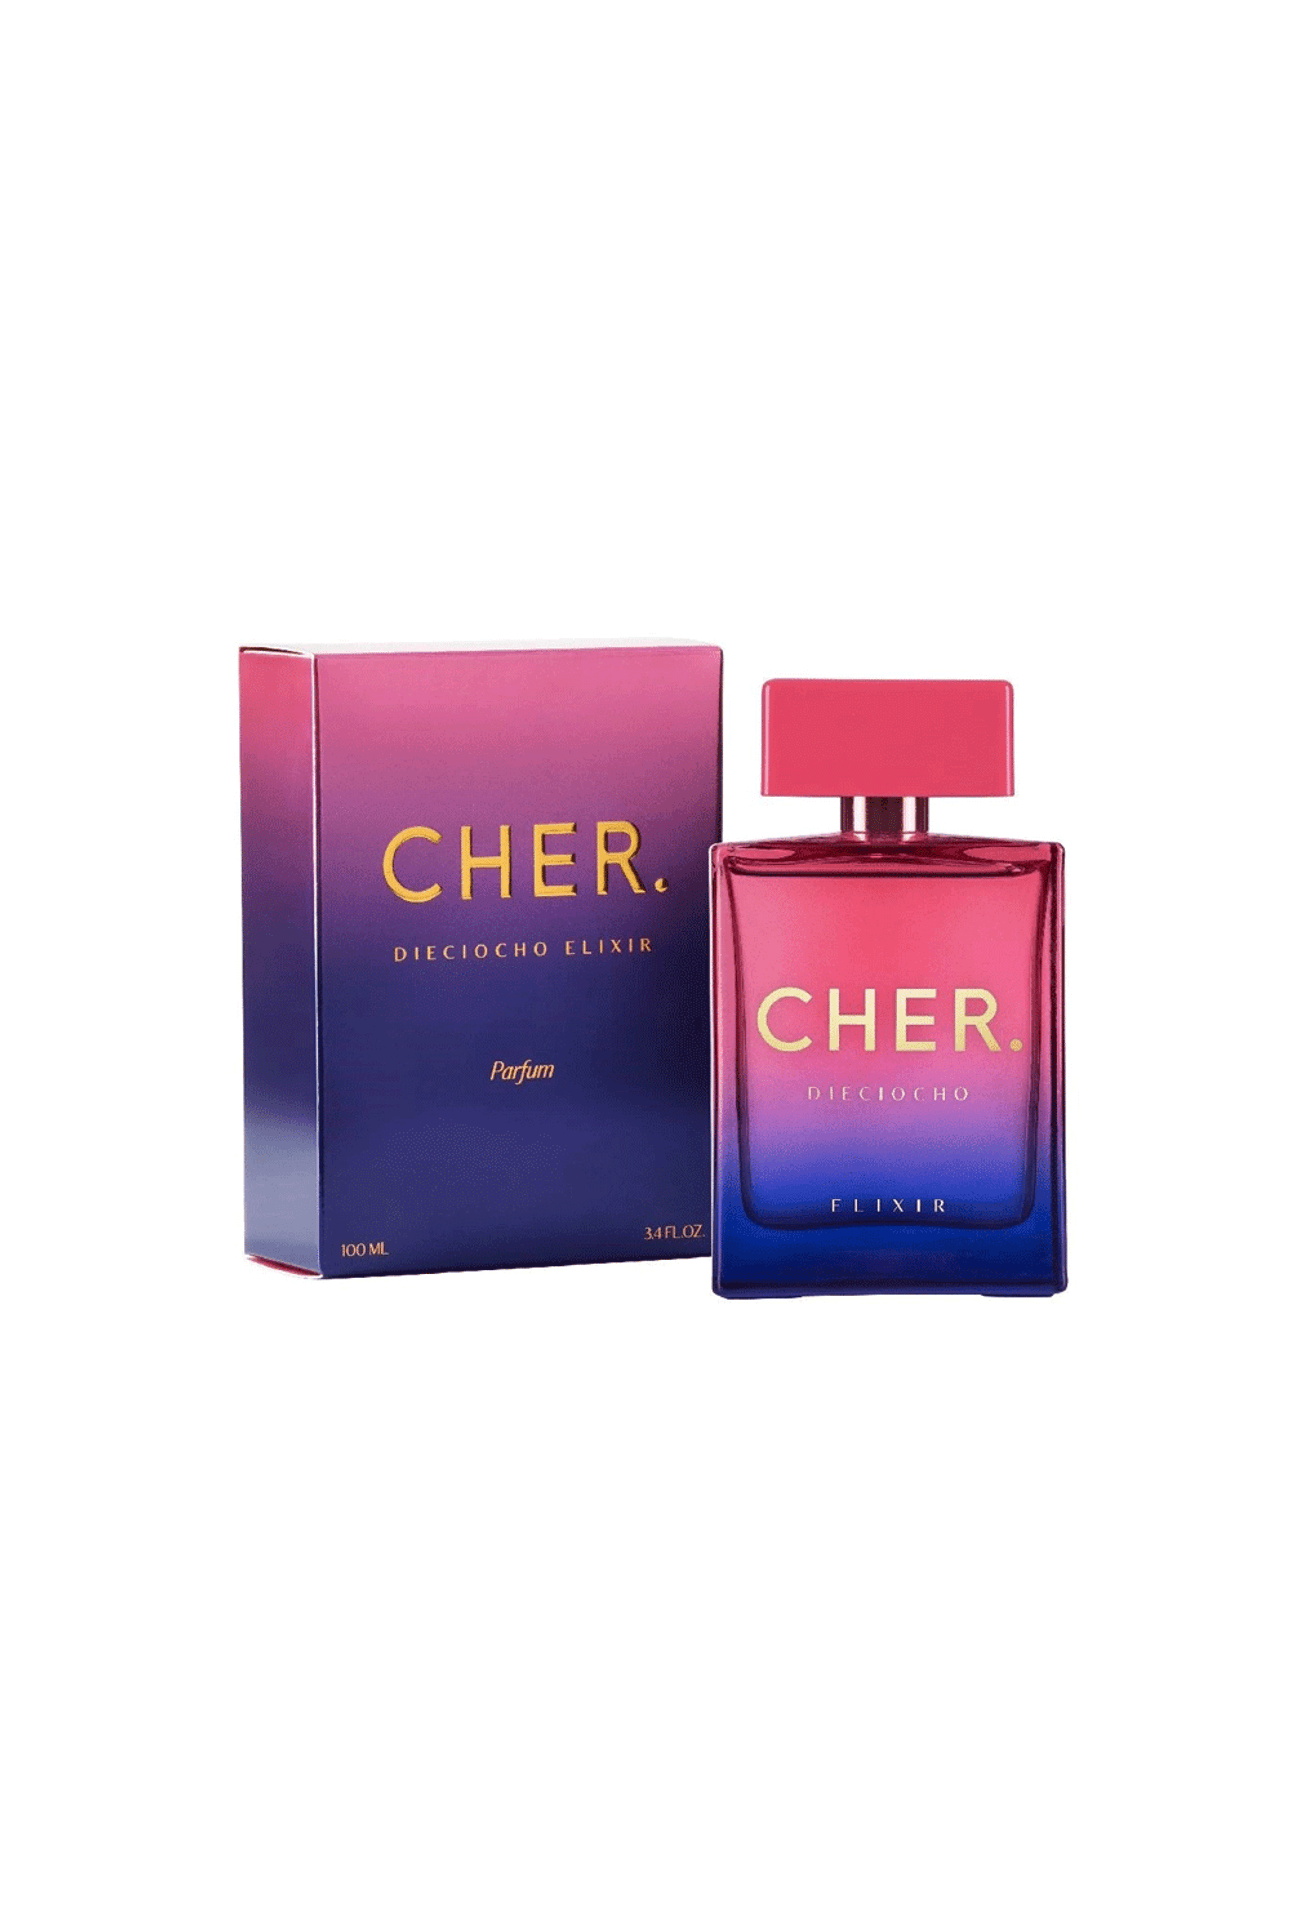 Perfume-Cher-Dieciocho-Elixir-x-100-ml-Cher